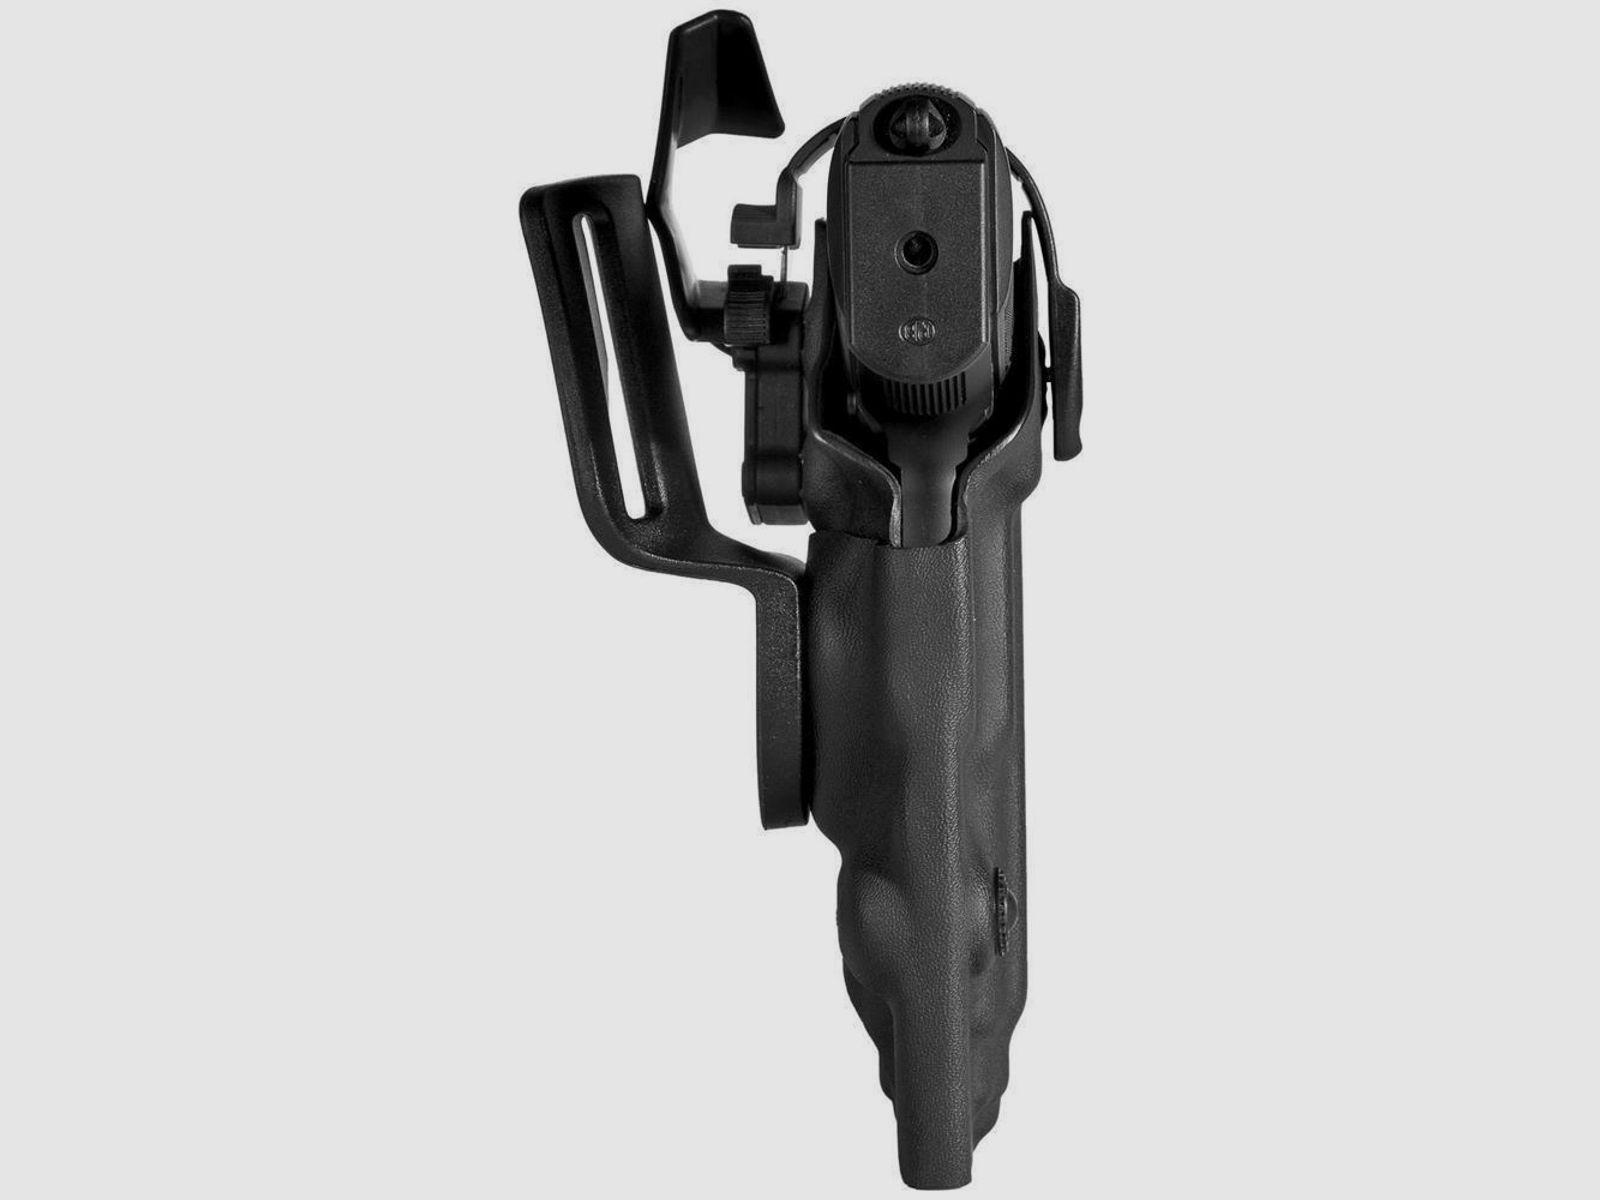 DUTY SAFETY Holster mit Sicherheitslevel II Beretta PX4 Storm / Compact / 8000-Linkshänder